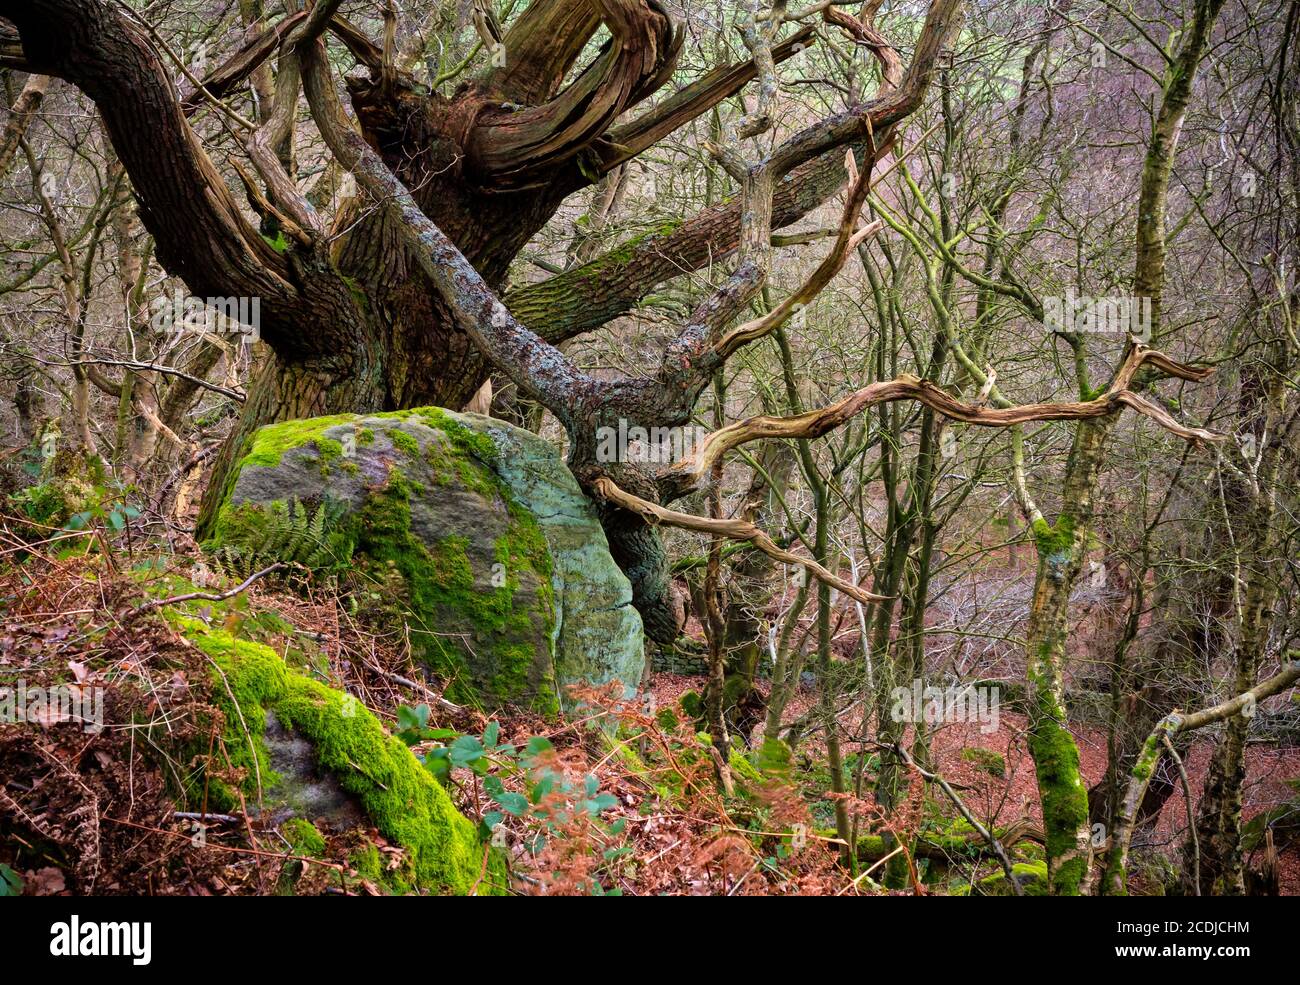 Viejos árboles retorcidos en el bosque con rocas y ramas cubiertas de musgo. Foto de stock